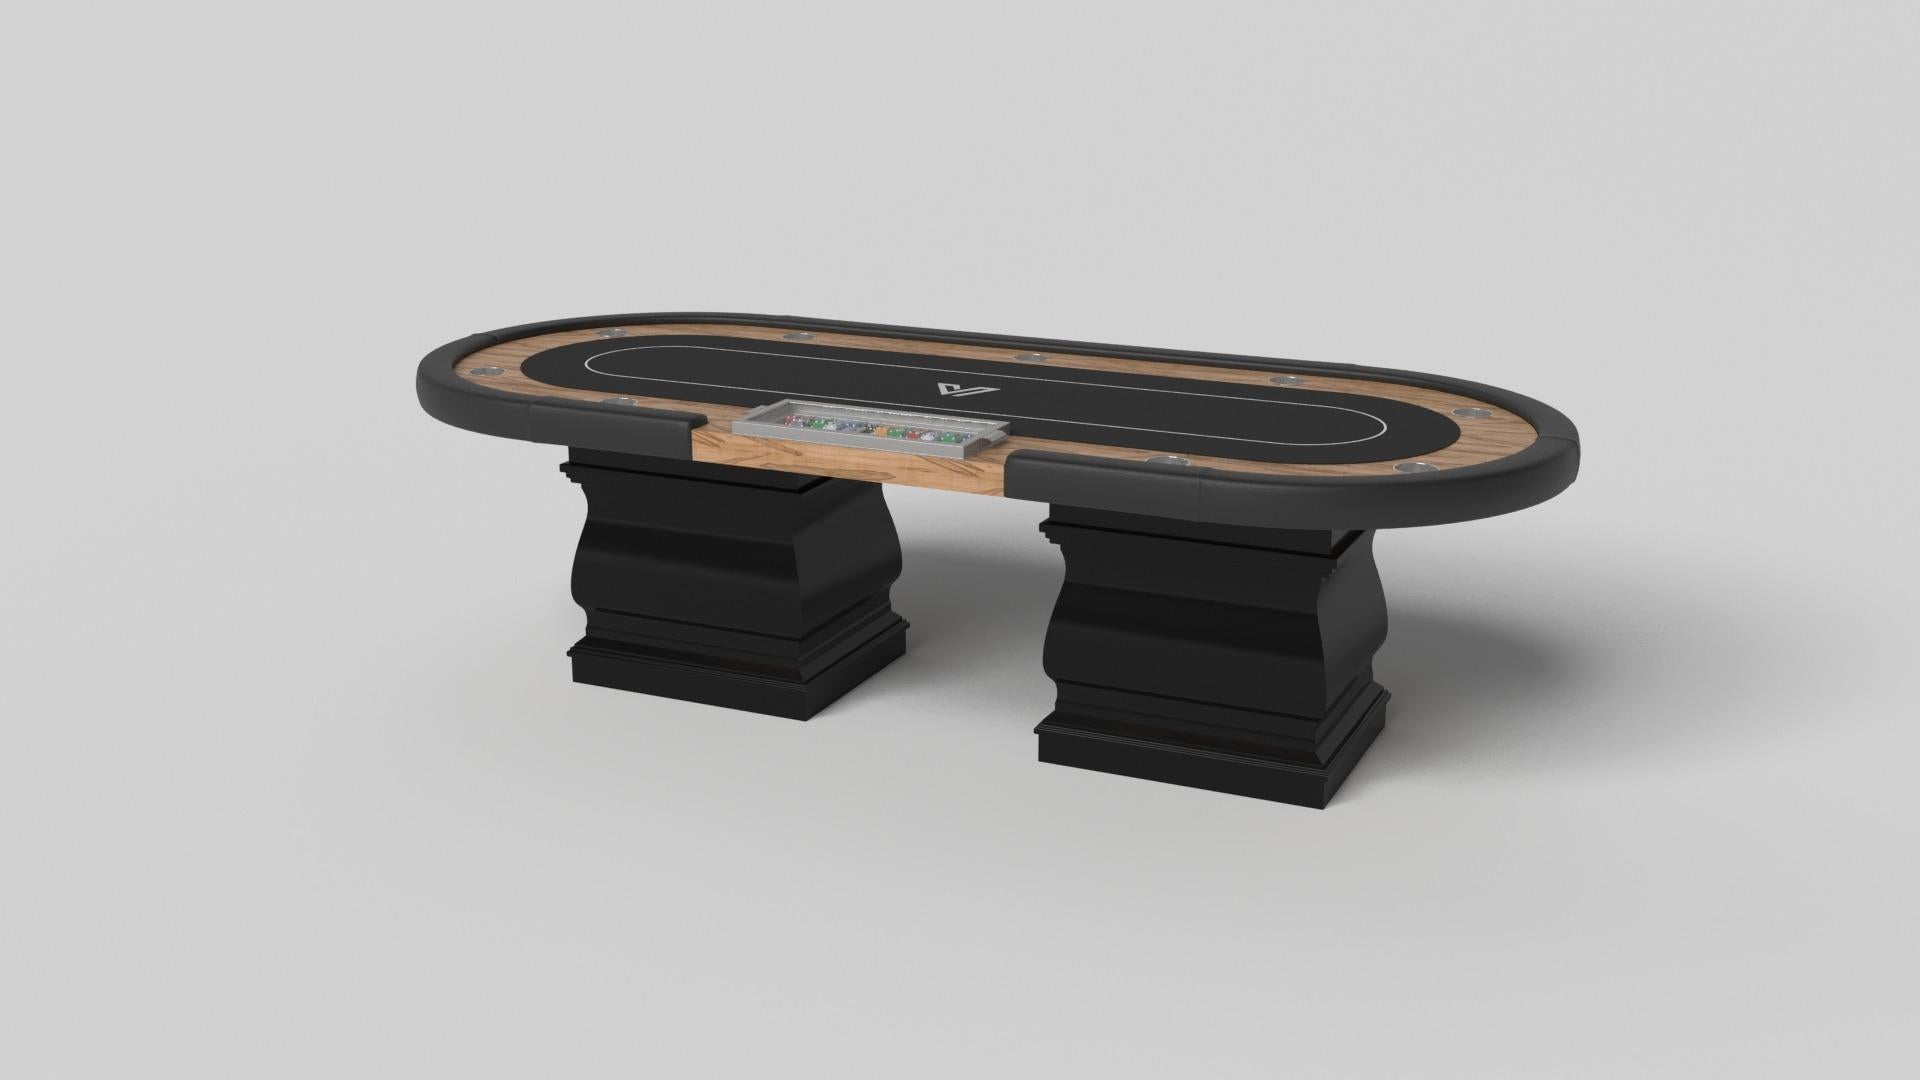 Zwei handgeformte Beine verleihen diesem handgefertigten Pokertisch in Weiß ein Gefühl von klassischem Stil. Dieser luxuriöse Holztisch hat eine glatte, rechteckige Platte, die auf zwei breiten Balustersäulen ruht, die die Kurven und Linien eines